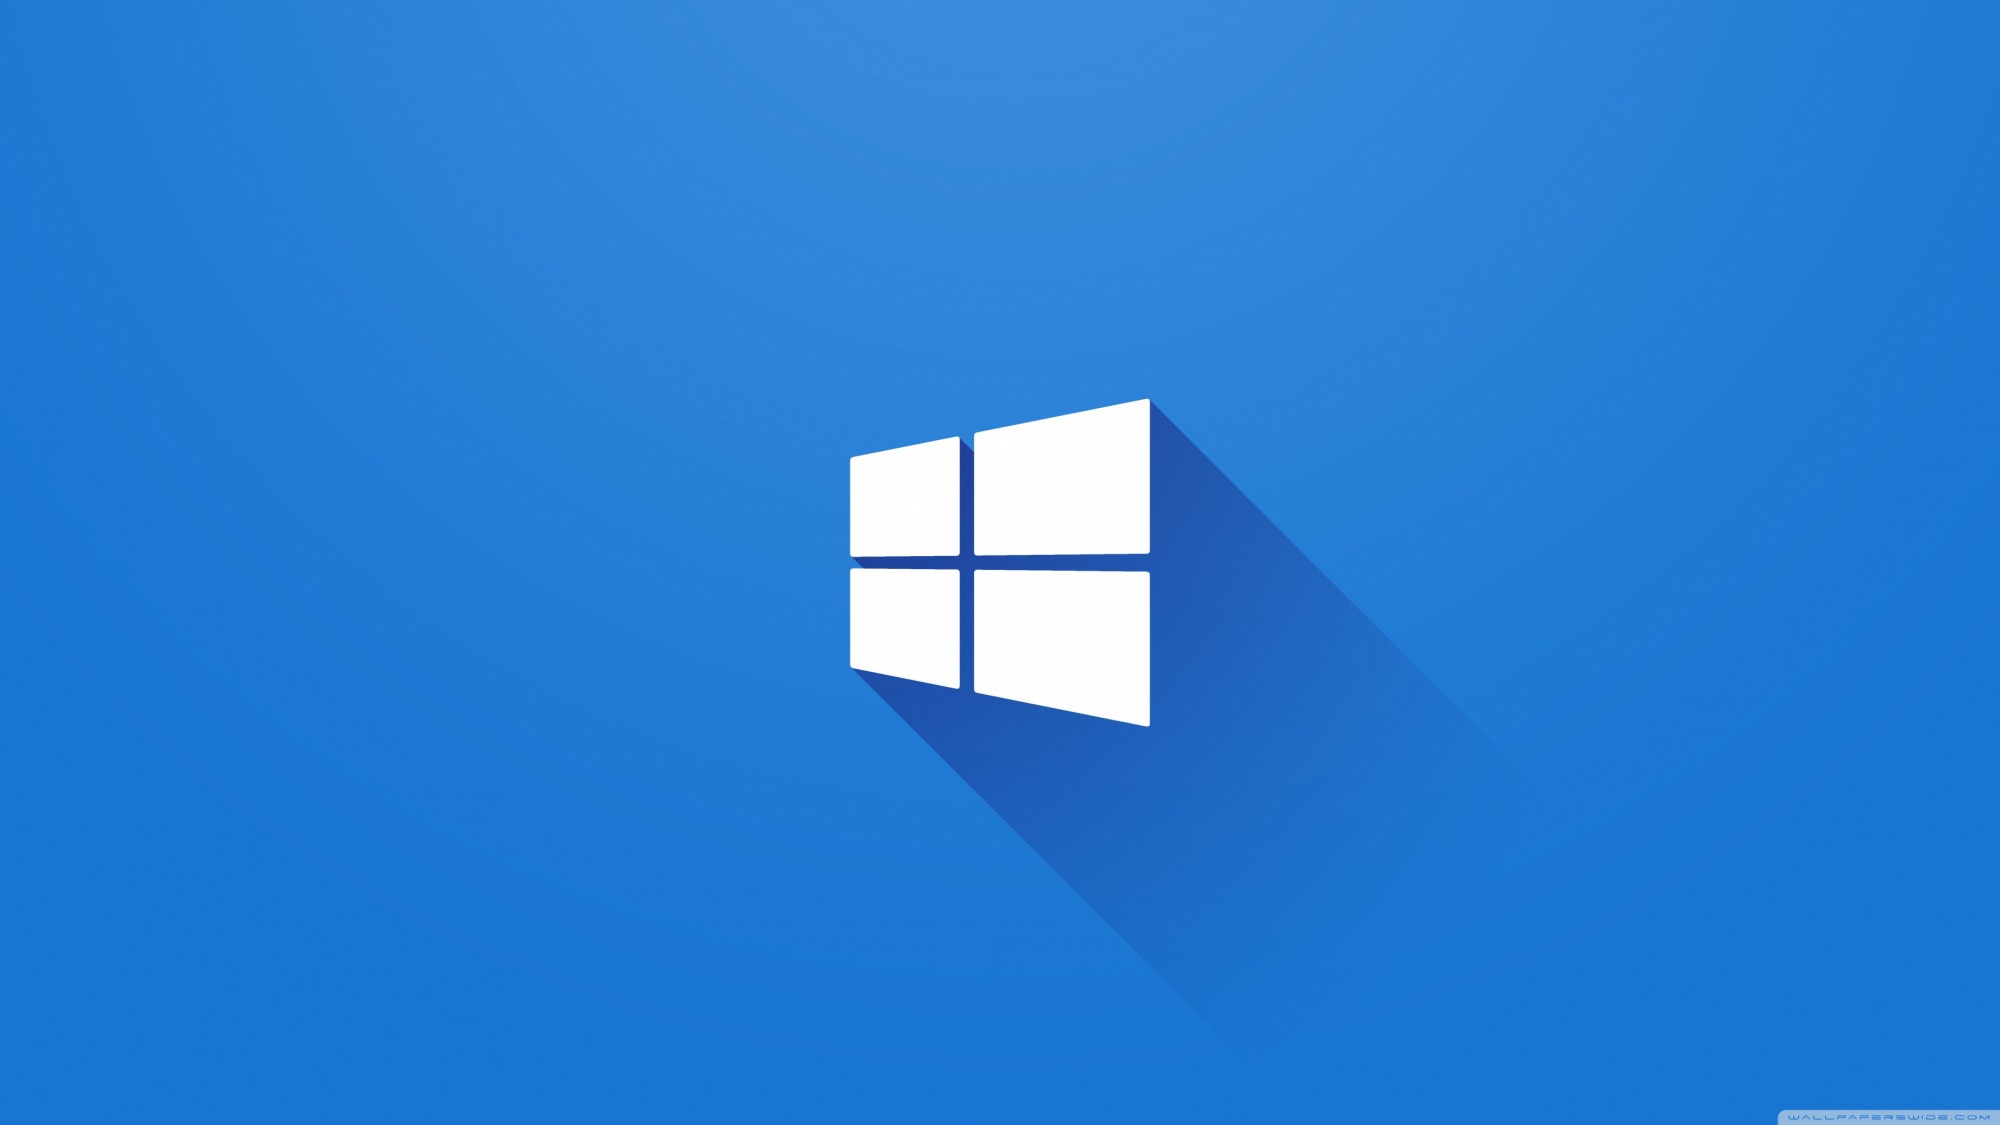 Bạn muốn tận hưởng các tính năng, hỗ trợ và trải nghiệm tuyệt vời của Windows 10? Thì đừng bỏ qua cơ hội nâng cấp lên phiên bản mới và cùng khám phá nhé!